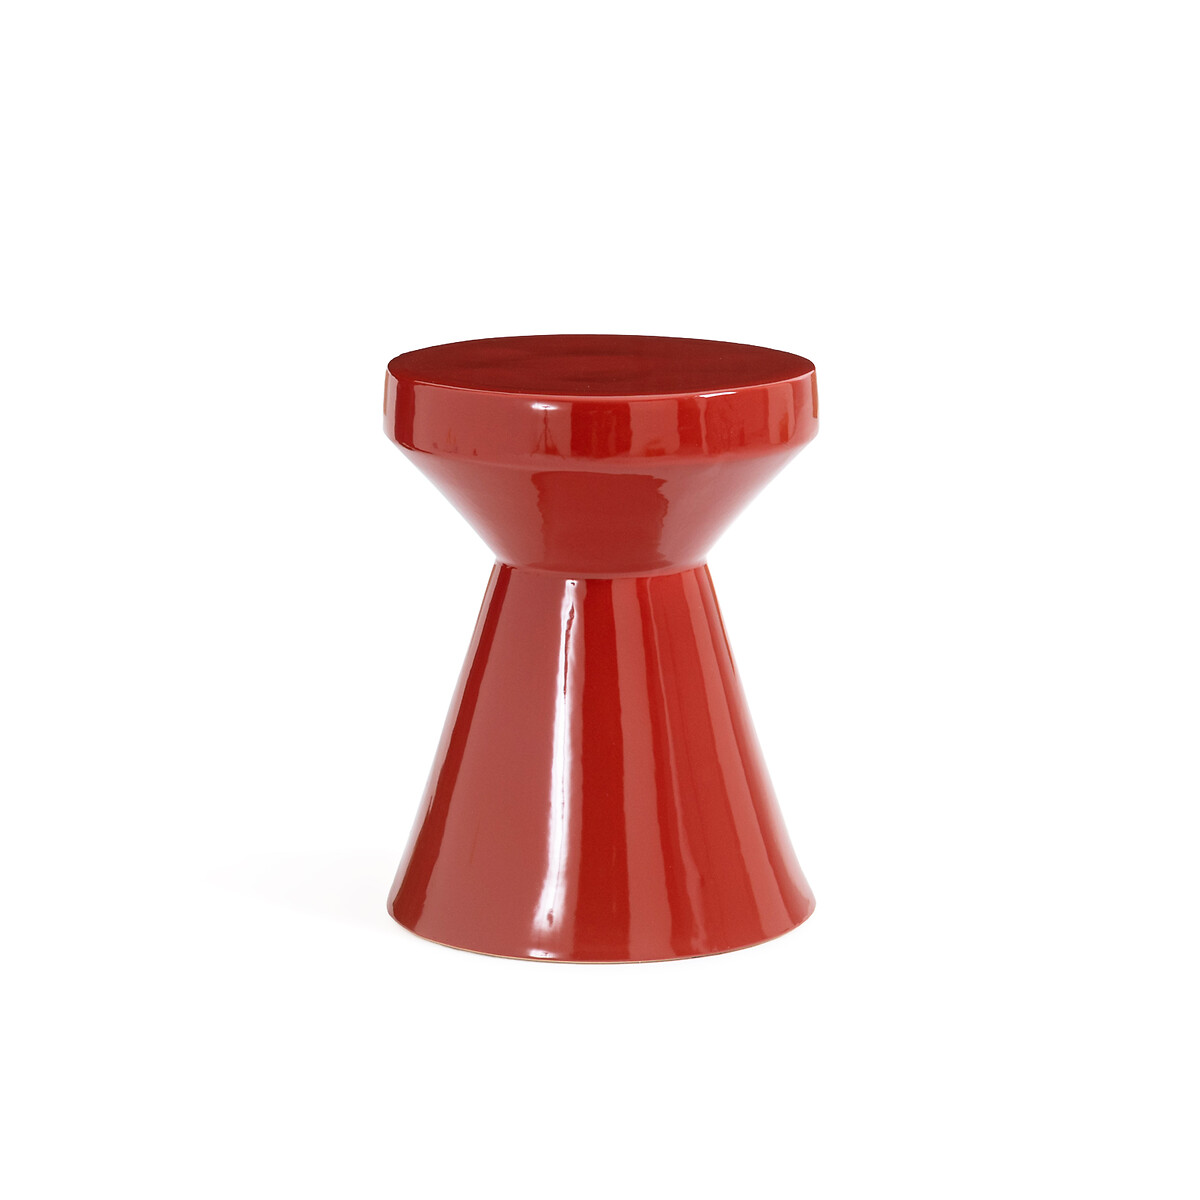 Стол Диванный из керамики Matmat единый размер красный LaRedoute - фото 1